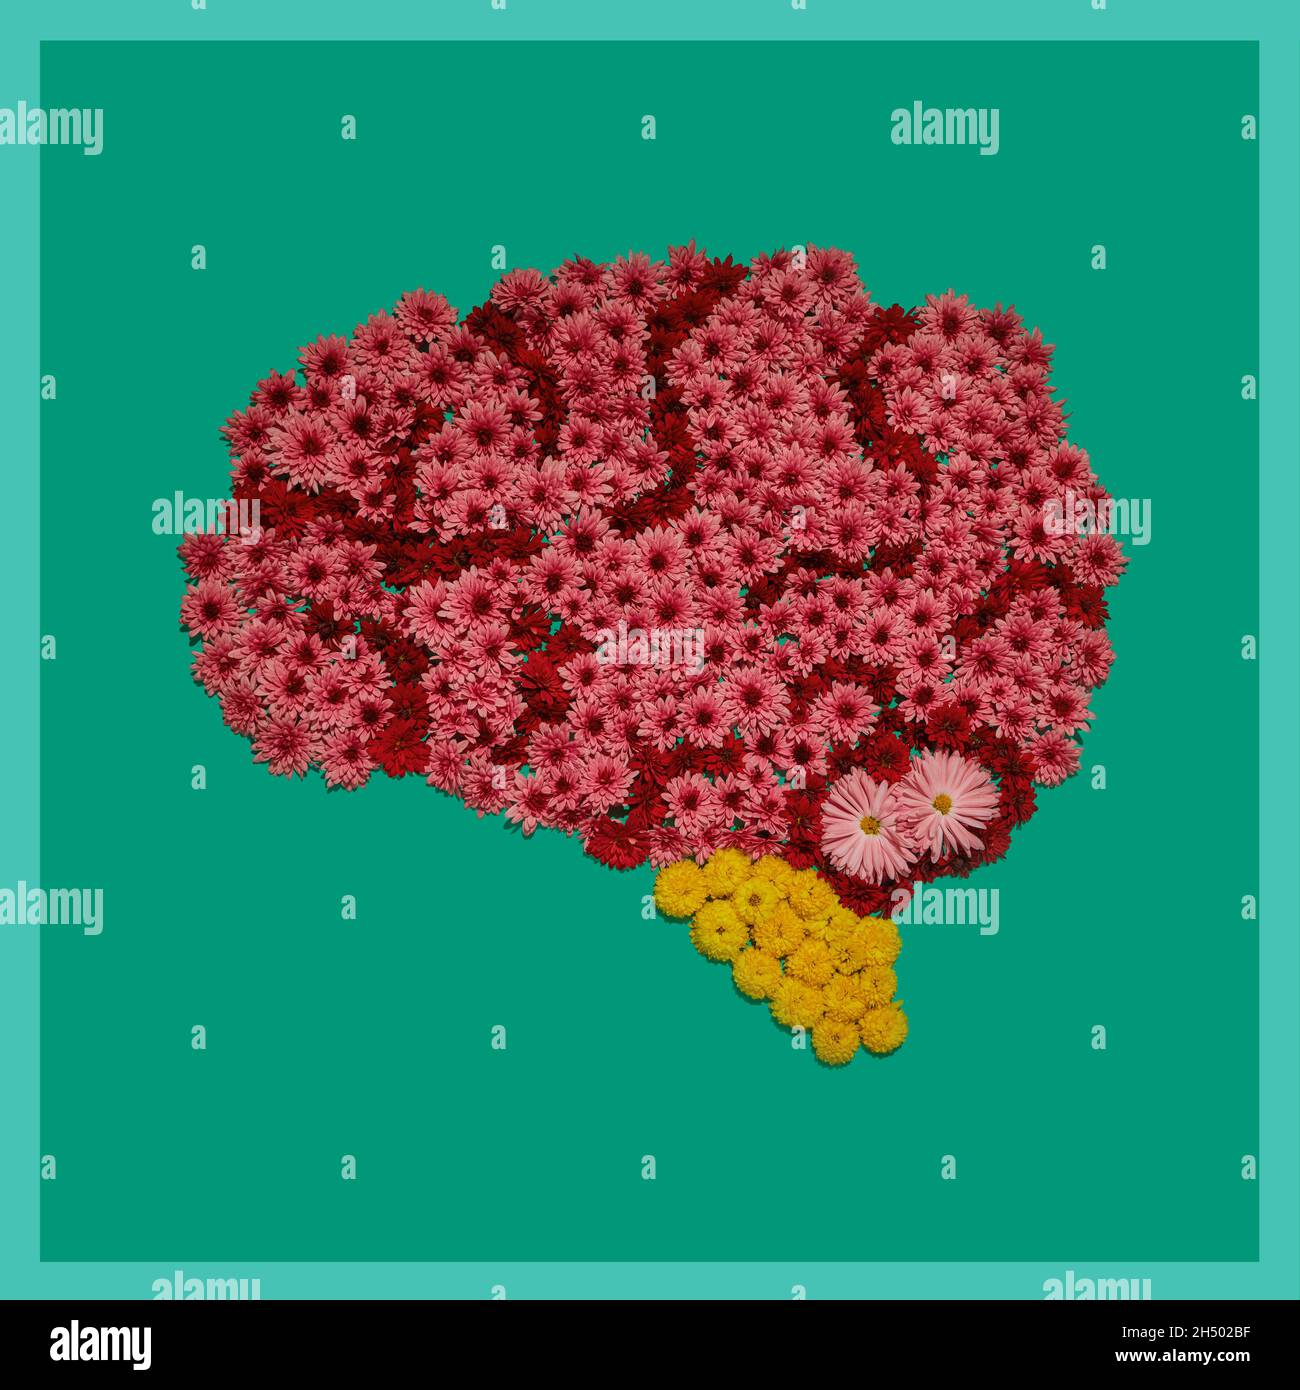 Modèle anatomique du cerveau humain , installation de fleurs sur fond vert.Partie de l'ensemble des images des organes humains internes Banque D'Images